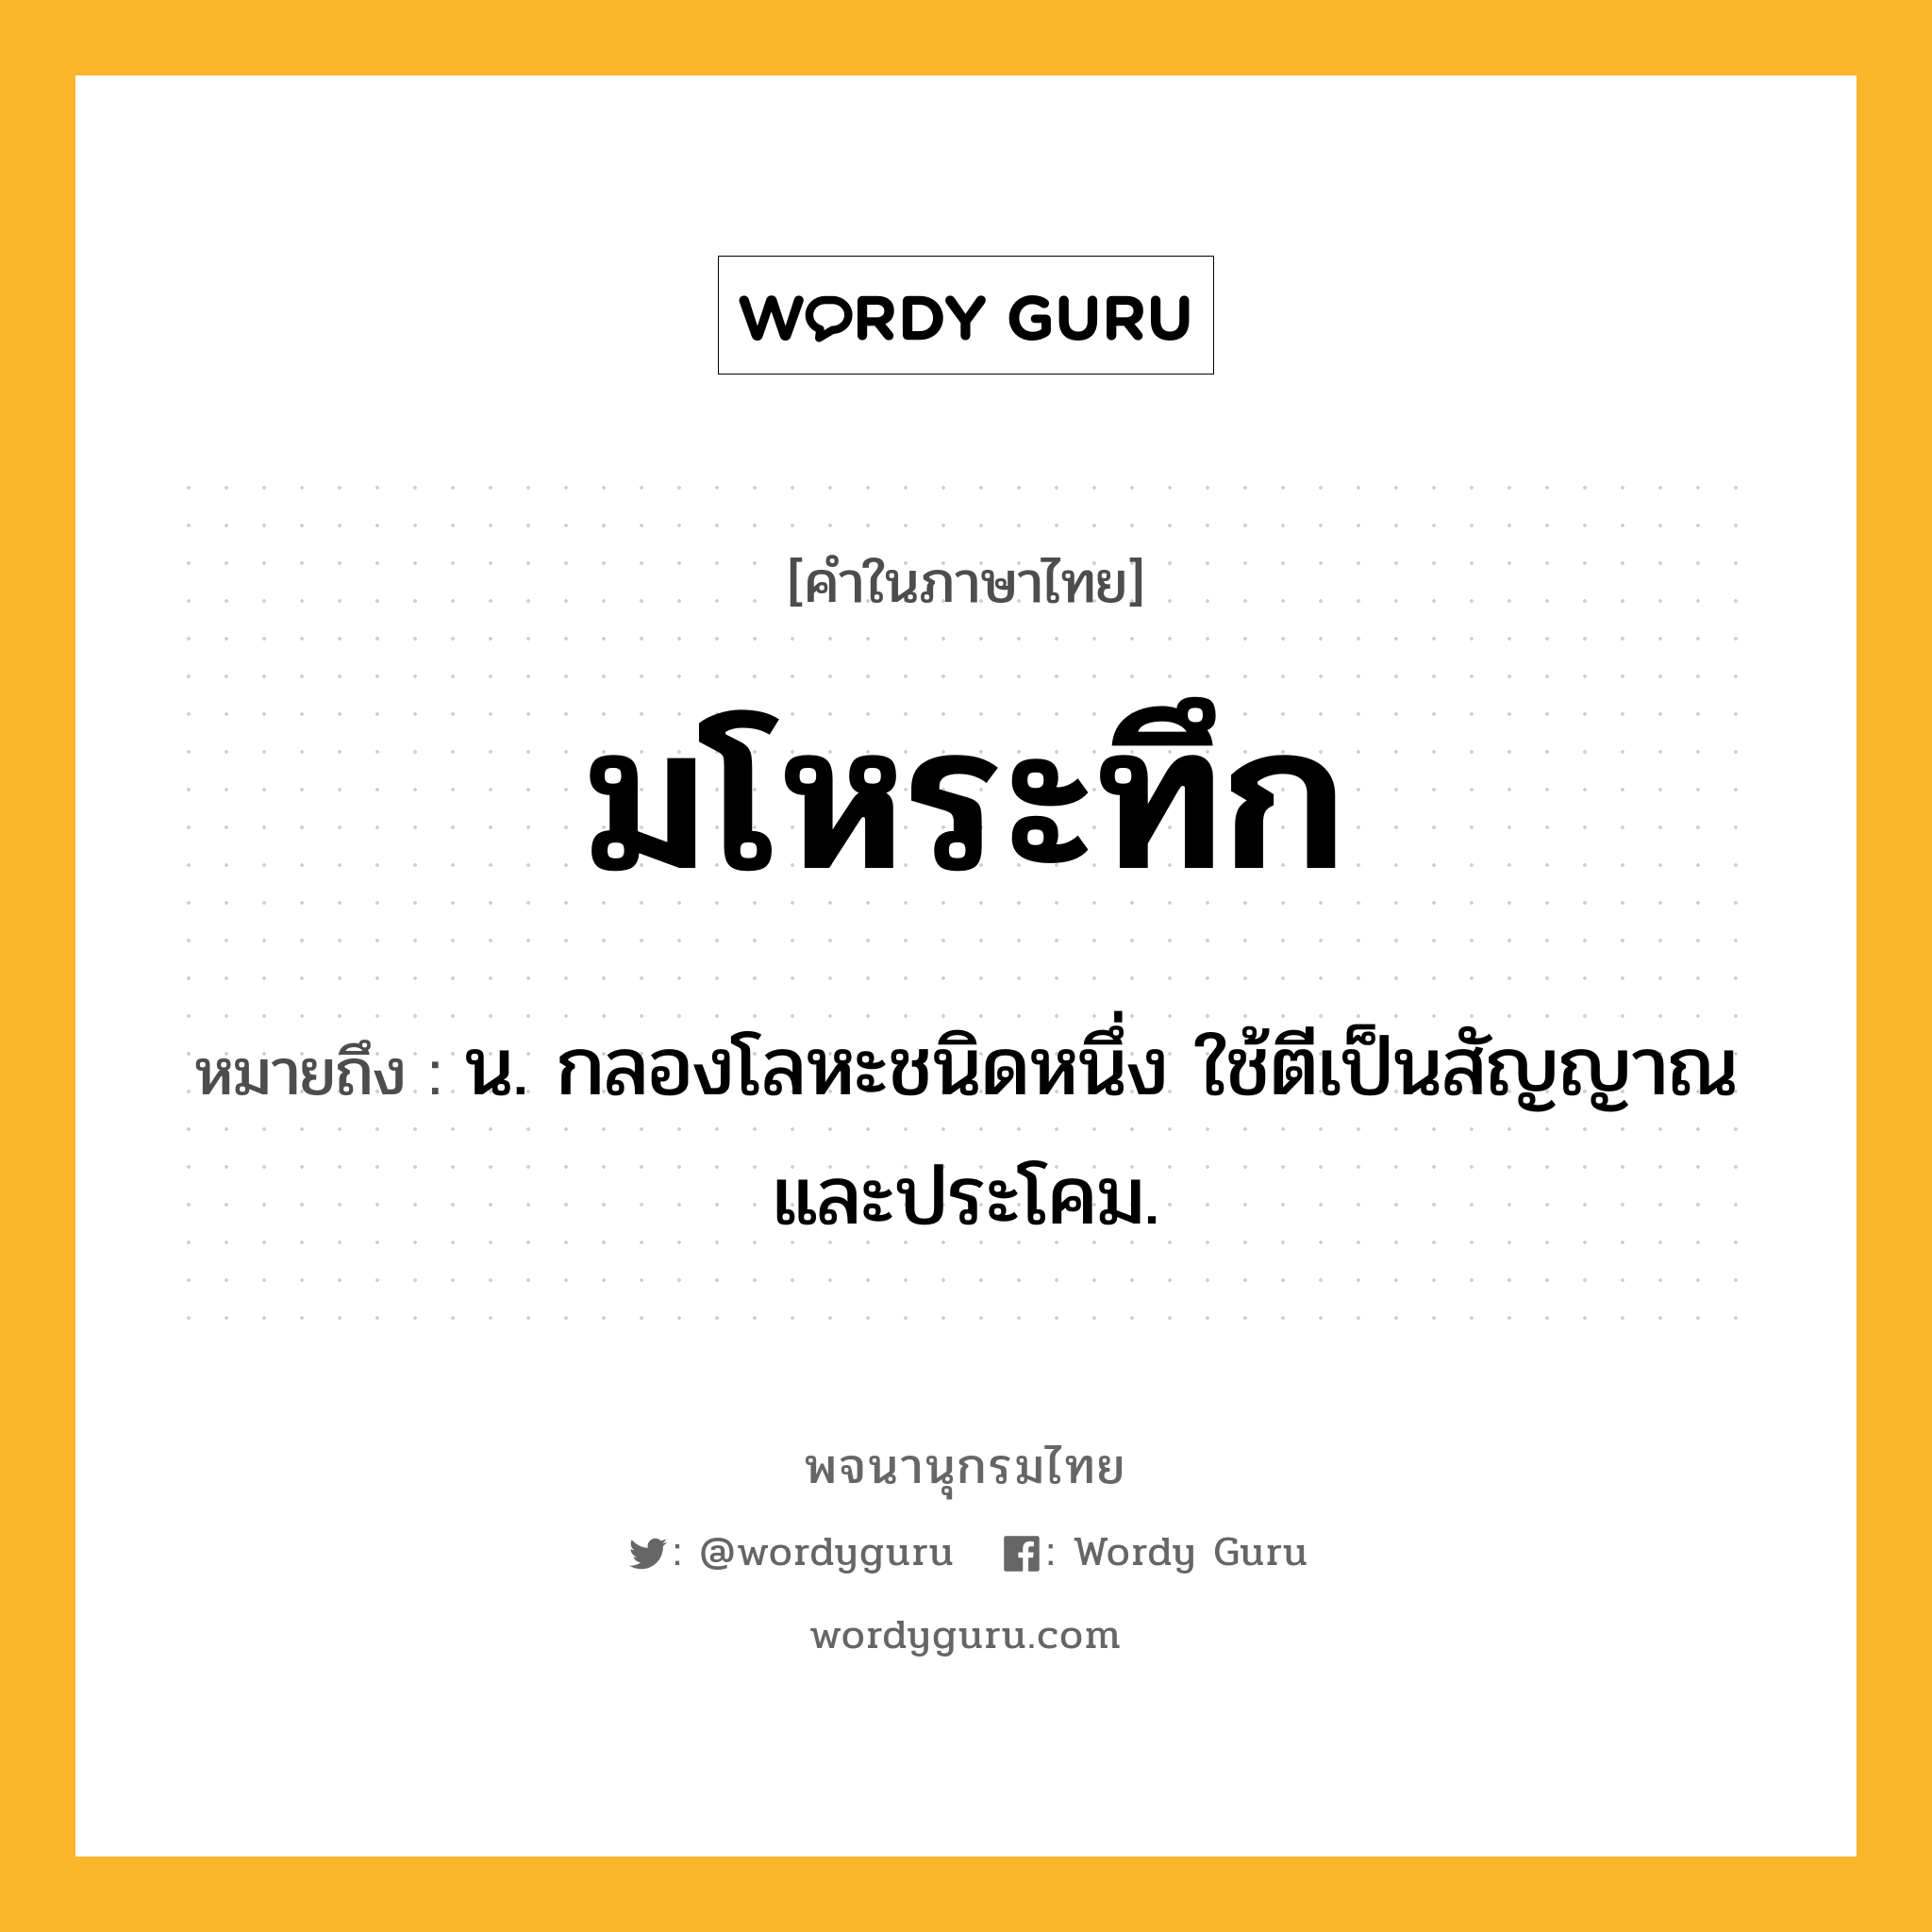 มโหระทึก หมายถึงอะไร?, คำในภาษาไทย มโหระทึก หมายถึง น. กลองโลหะชนิดหนึ่ง ใช้ตีเป็นสัญญาณและประโคม.